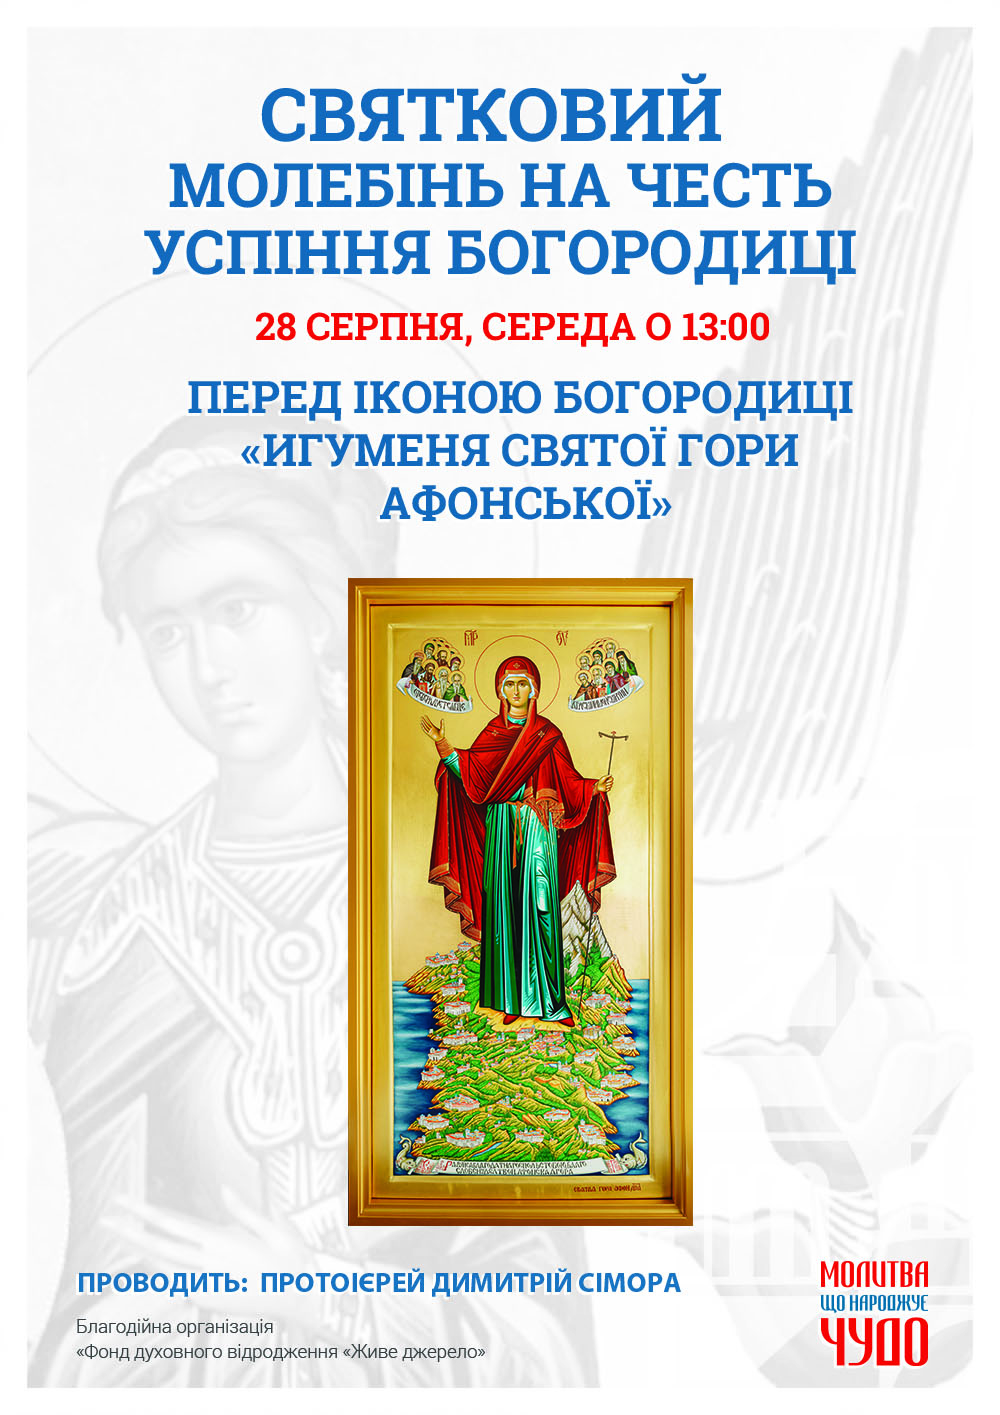 Святковий молебінь на честь Успіння Богородиці у Києві